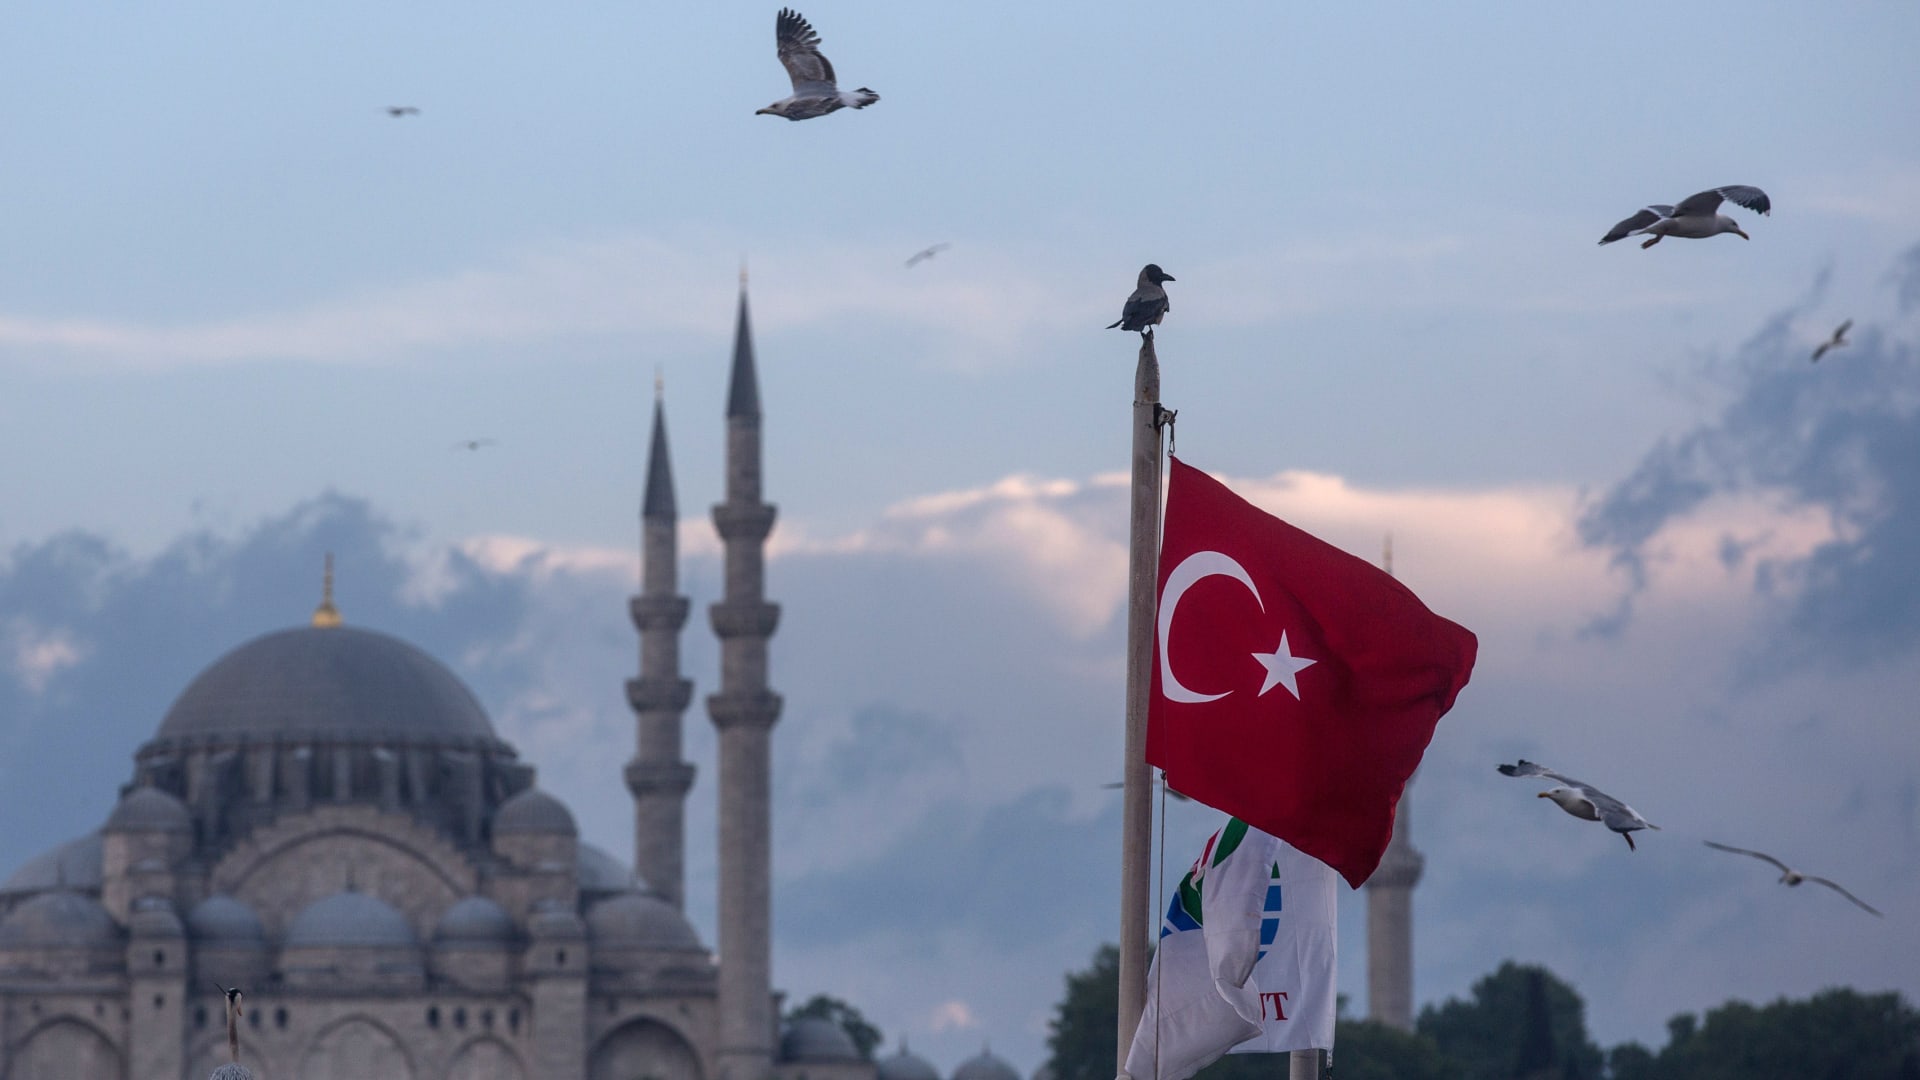 دول الخليج تتقدم على تركيا في مؤشر الرخاء العالمي